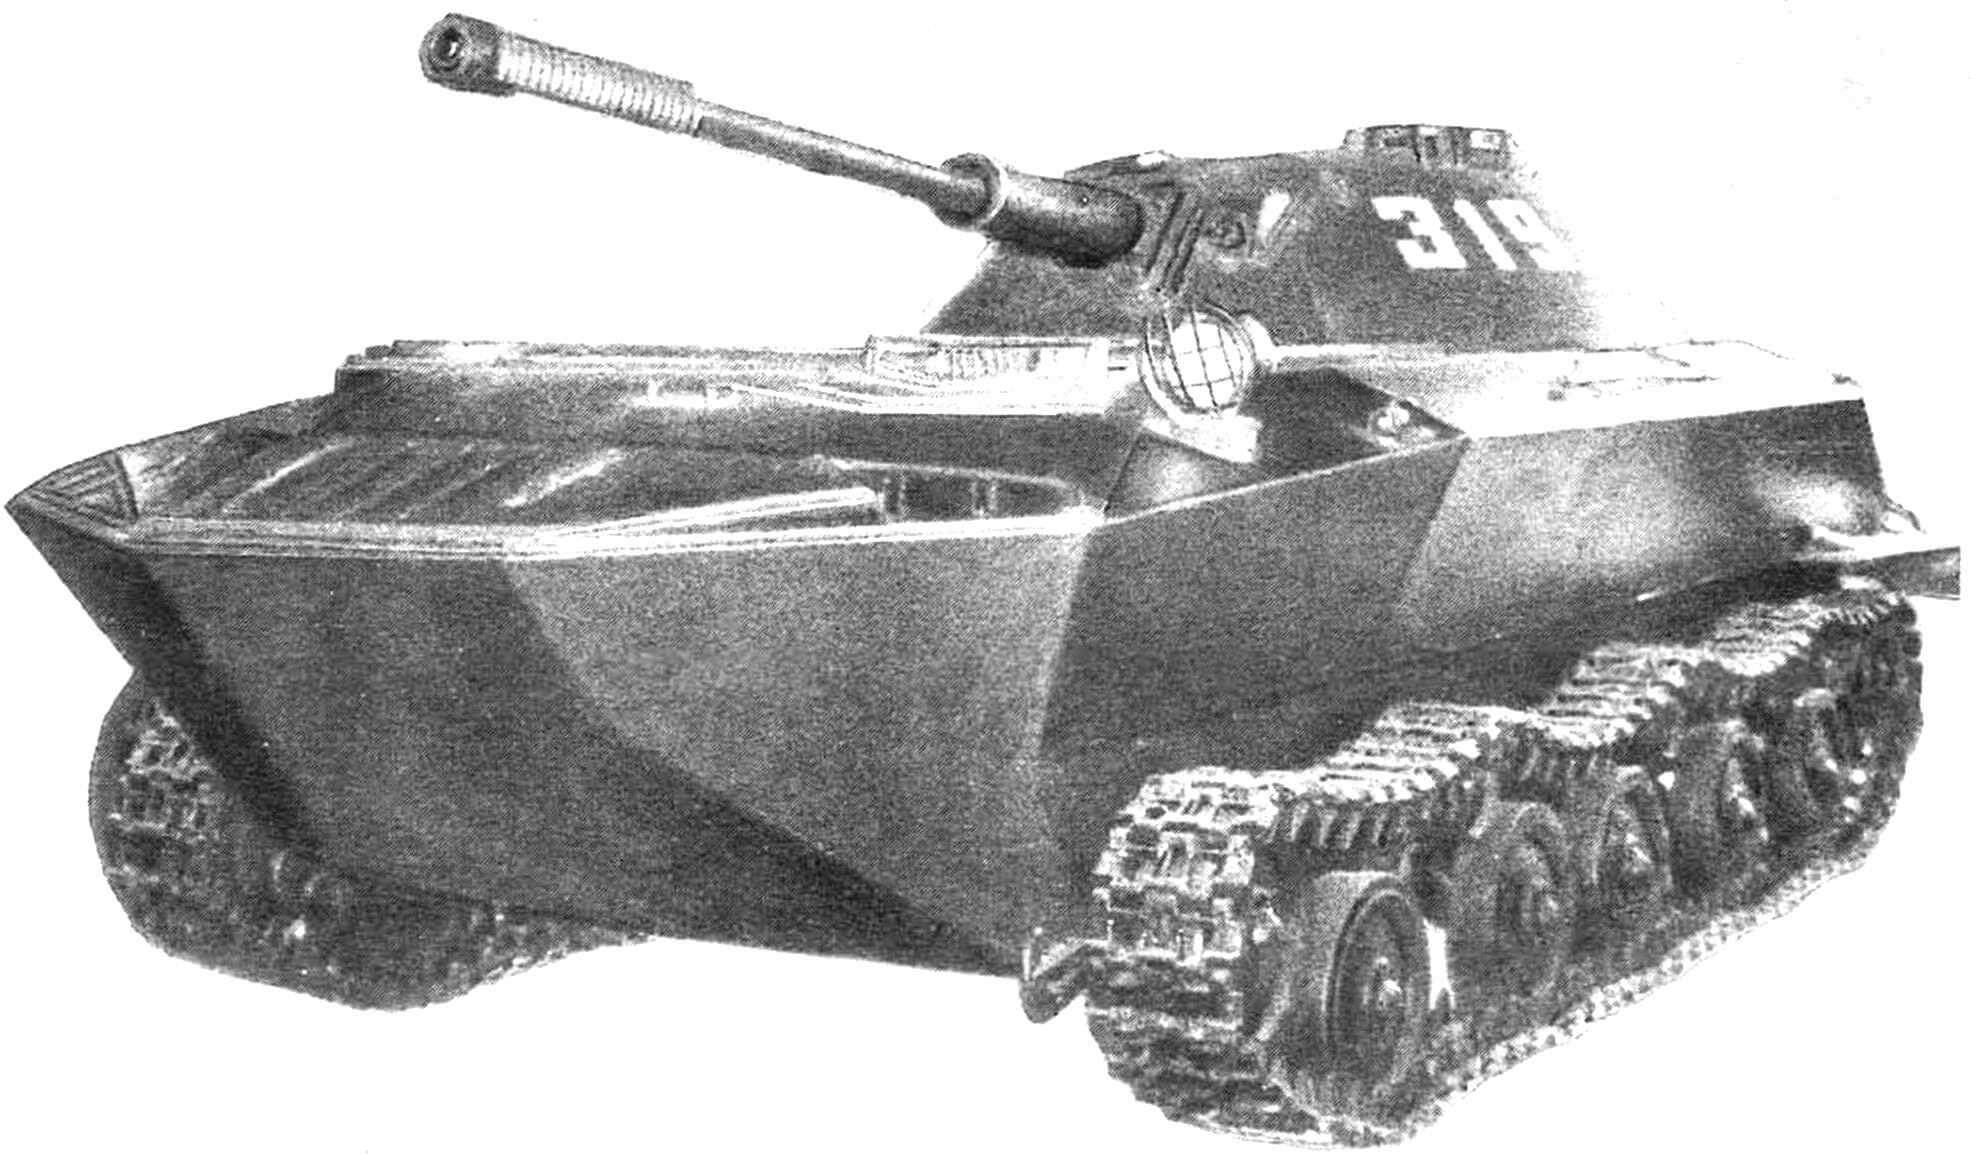 Плавающий танк К-90. Опытный образец. Создан в 1950 году. В конкурсной борьбе проиграл ПТ-76